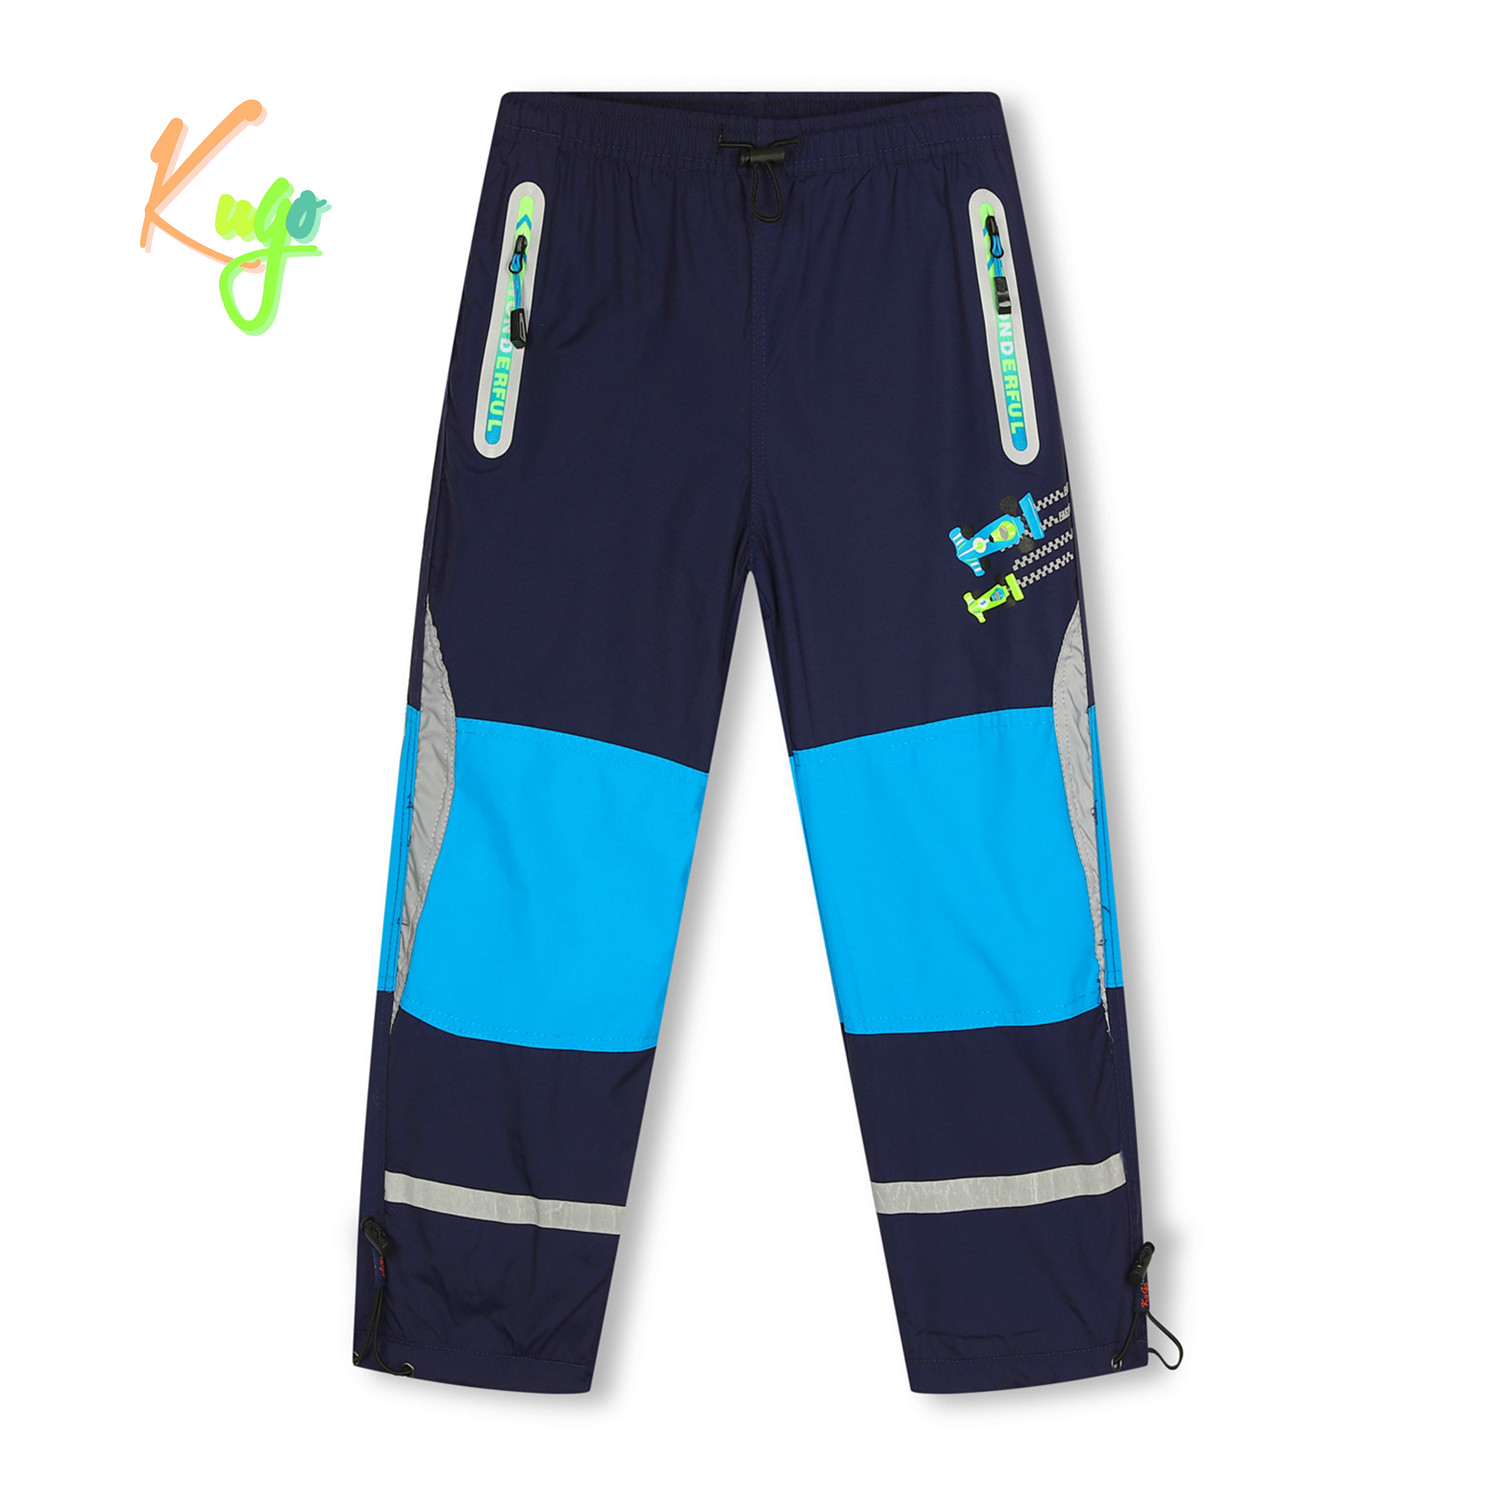 Chlapecké šusťákové kalhoty, zateplené - KUGO DK7127, tmavě modrá Barva: Modrá tmavě, Velikost: 110